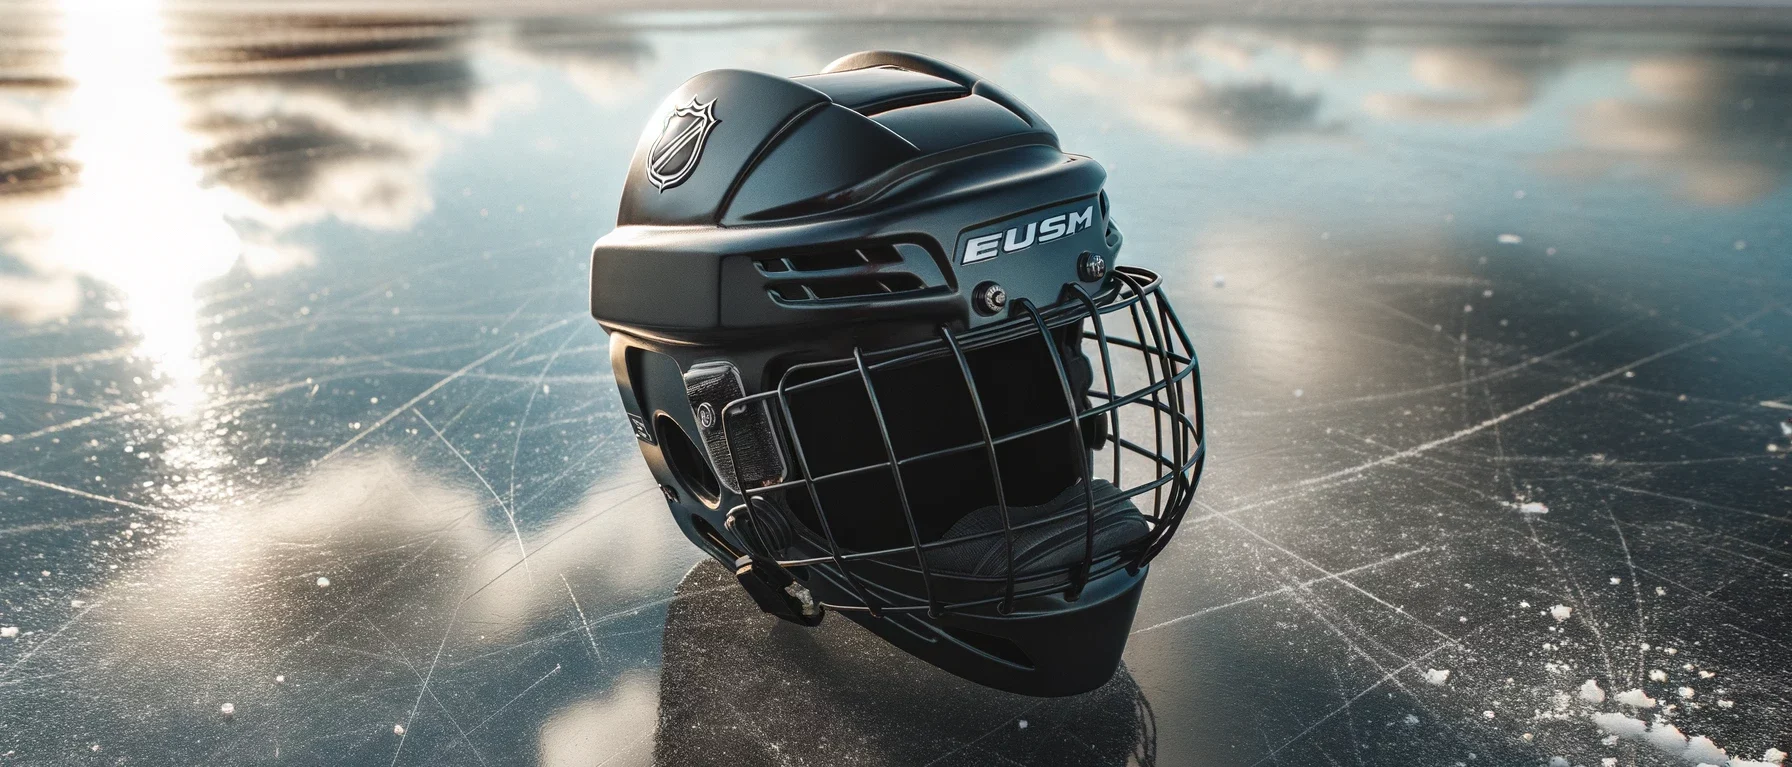 Foto eines Eishockeyhelms auf einem zugefrorenen Teich mit der Reflexion eines bewölkten Himmels. Der Helm ist glatt, schwarz und hat sichtbare Lüftungsschlitze.